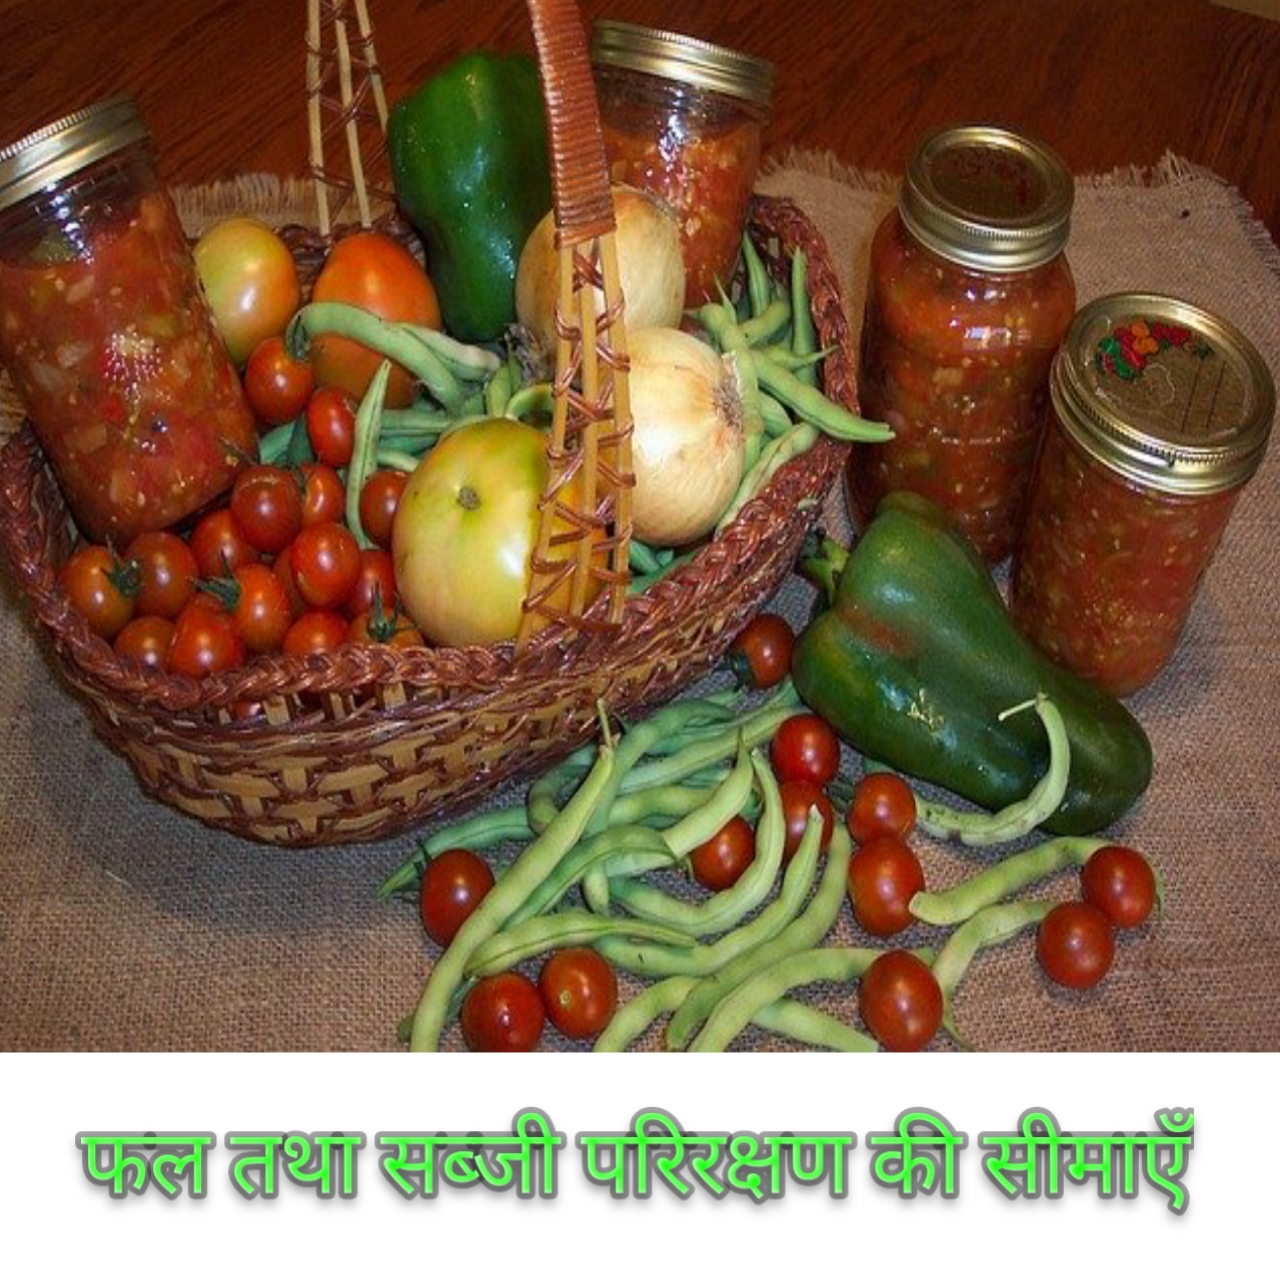 फल तथा सब्जी परिरक्षण की सीमाएँ Limitation of fruit and vegetables preservation